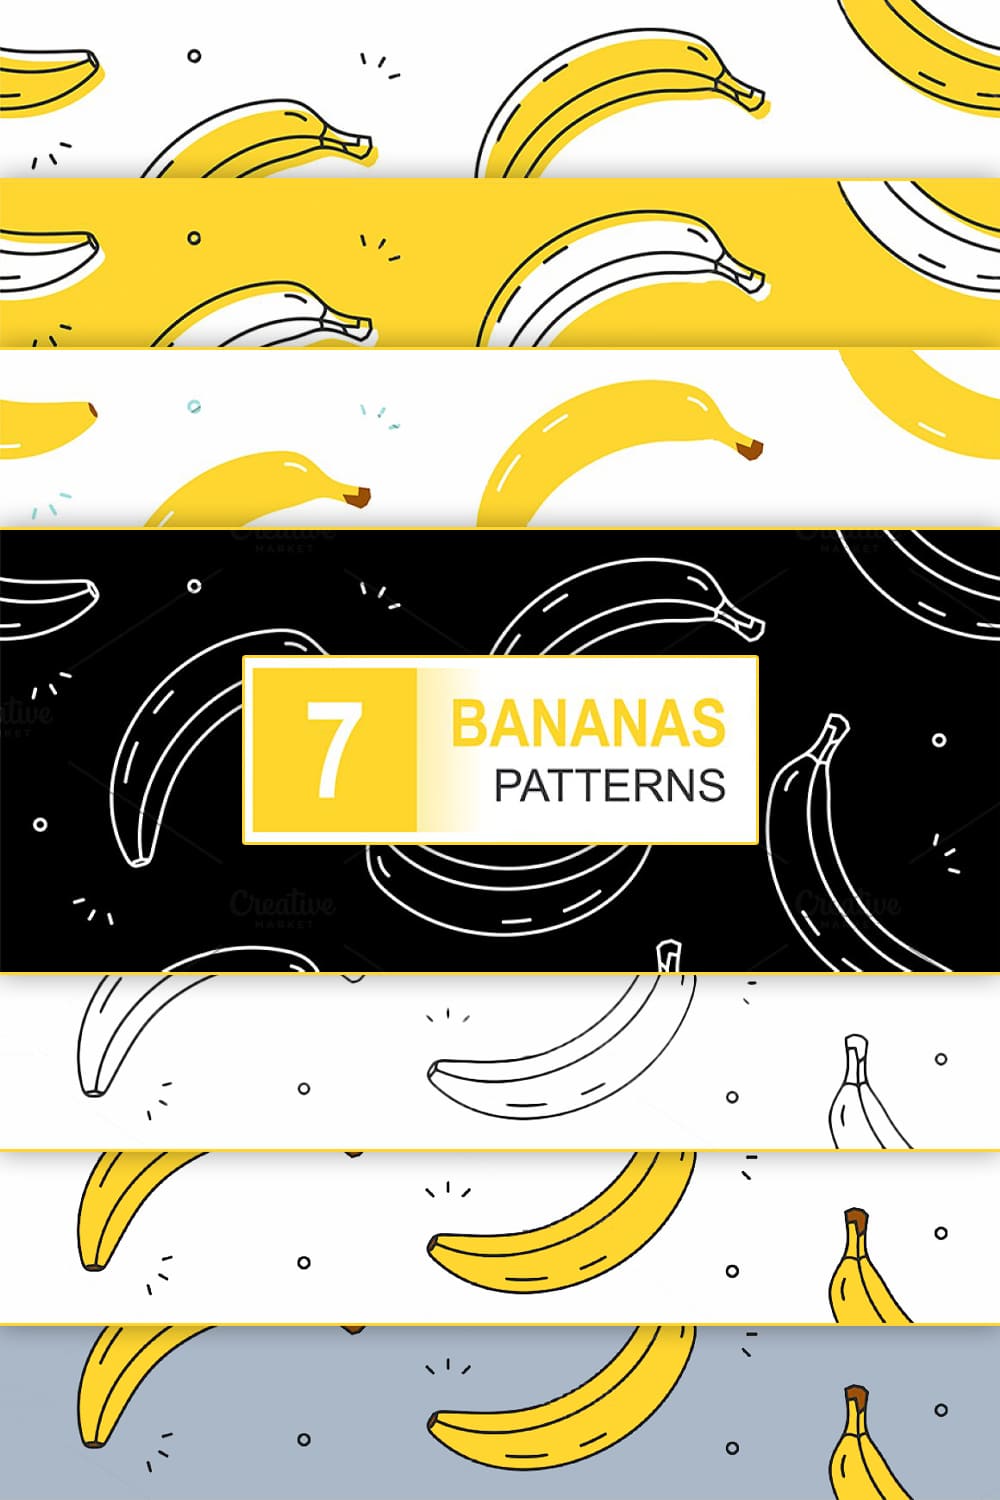 Bananas Patterns pinterest image.